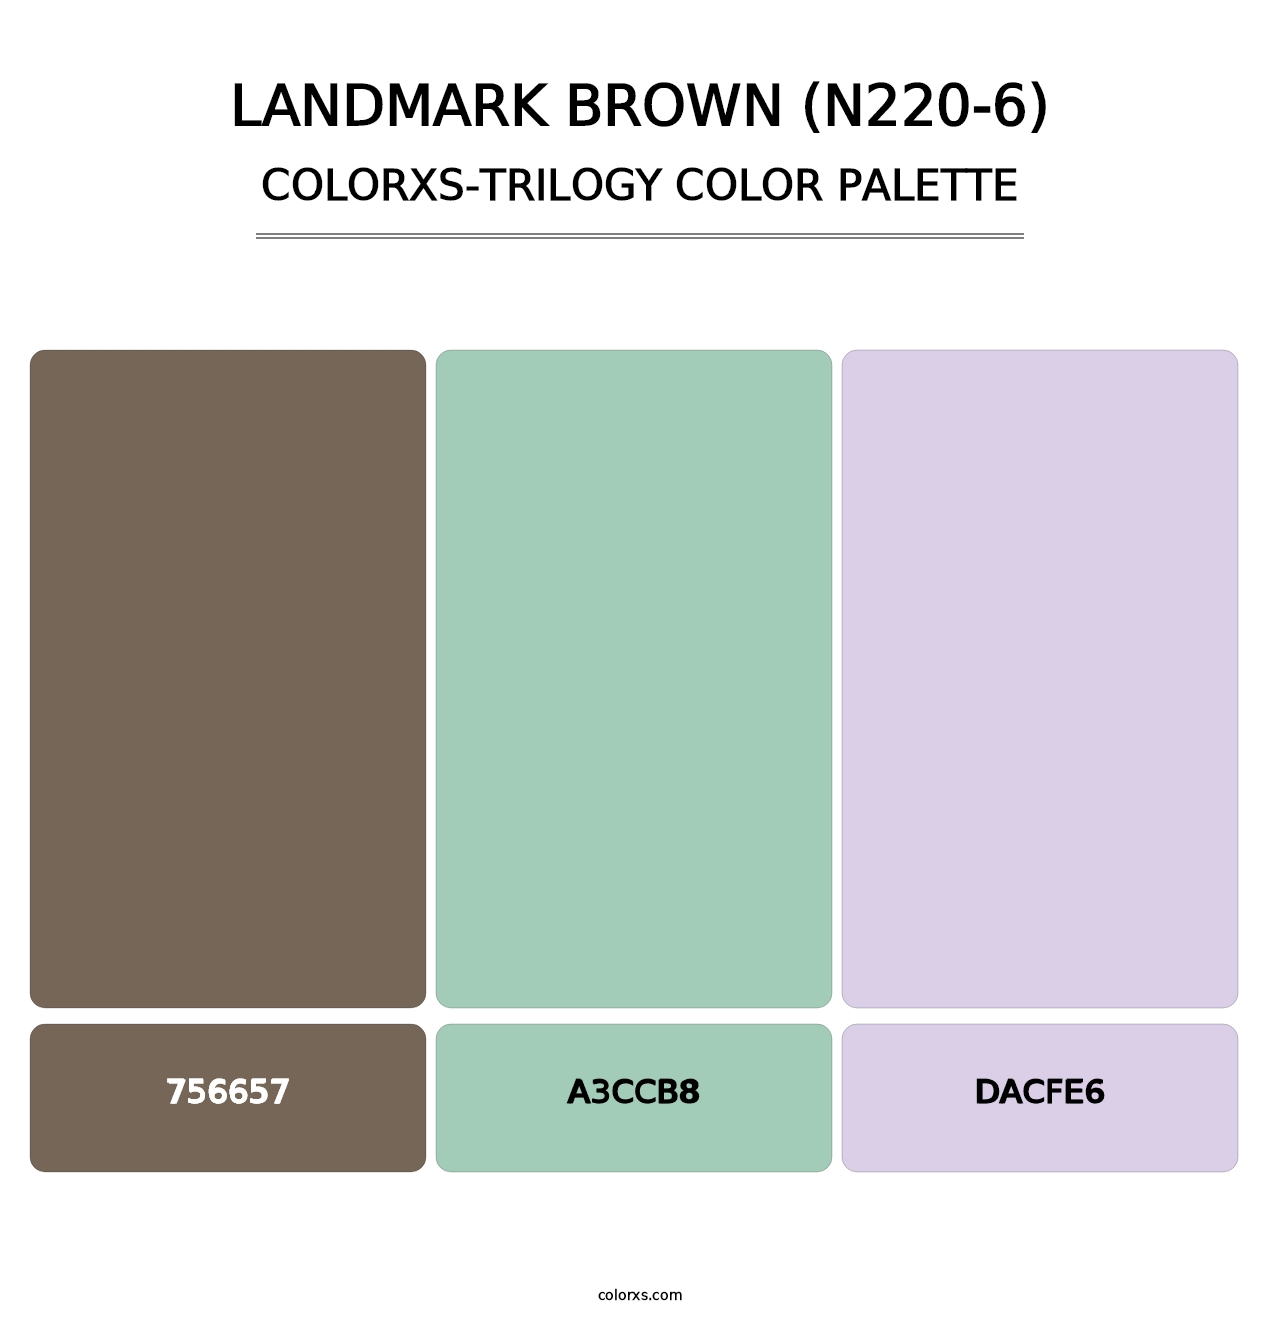 Landmark Brown (N220-6) - Colorxs Trilogy Palette